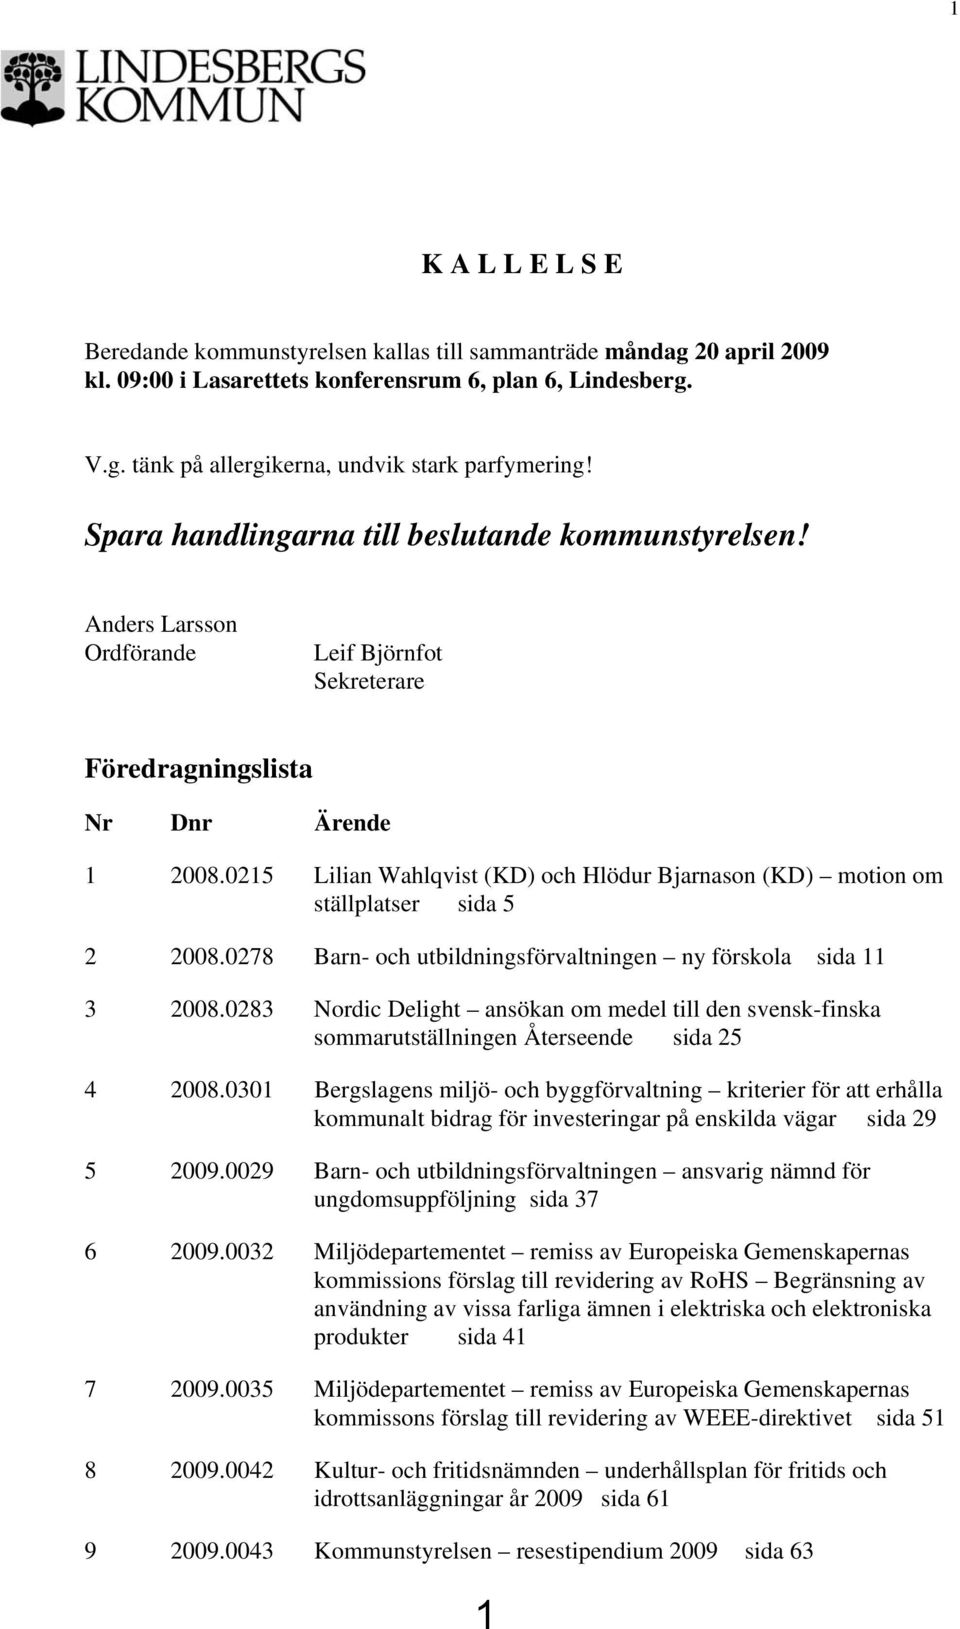 0215 Lilian Wahlqvist (KD) och Hlödur Bjarnason (KD) motion om ställplatser sida 5 2 2008.0278 Barn- och utbildningsförvaltningen ny förskola sida 11 3 2008.